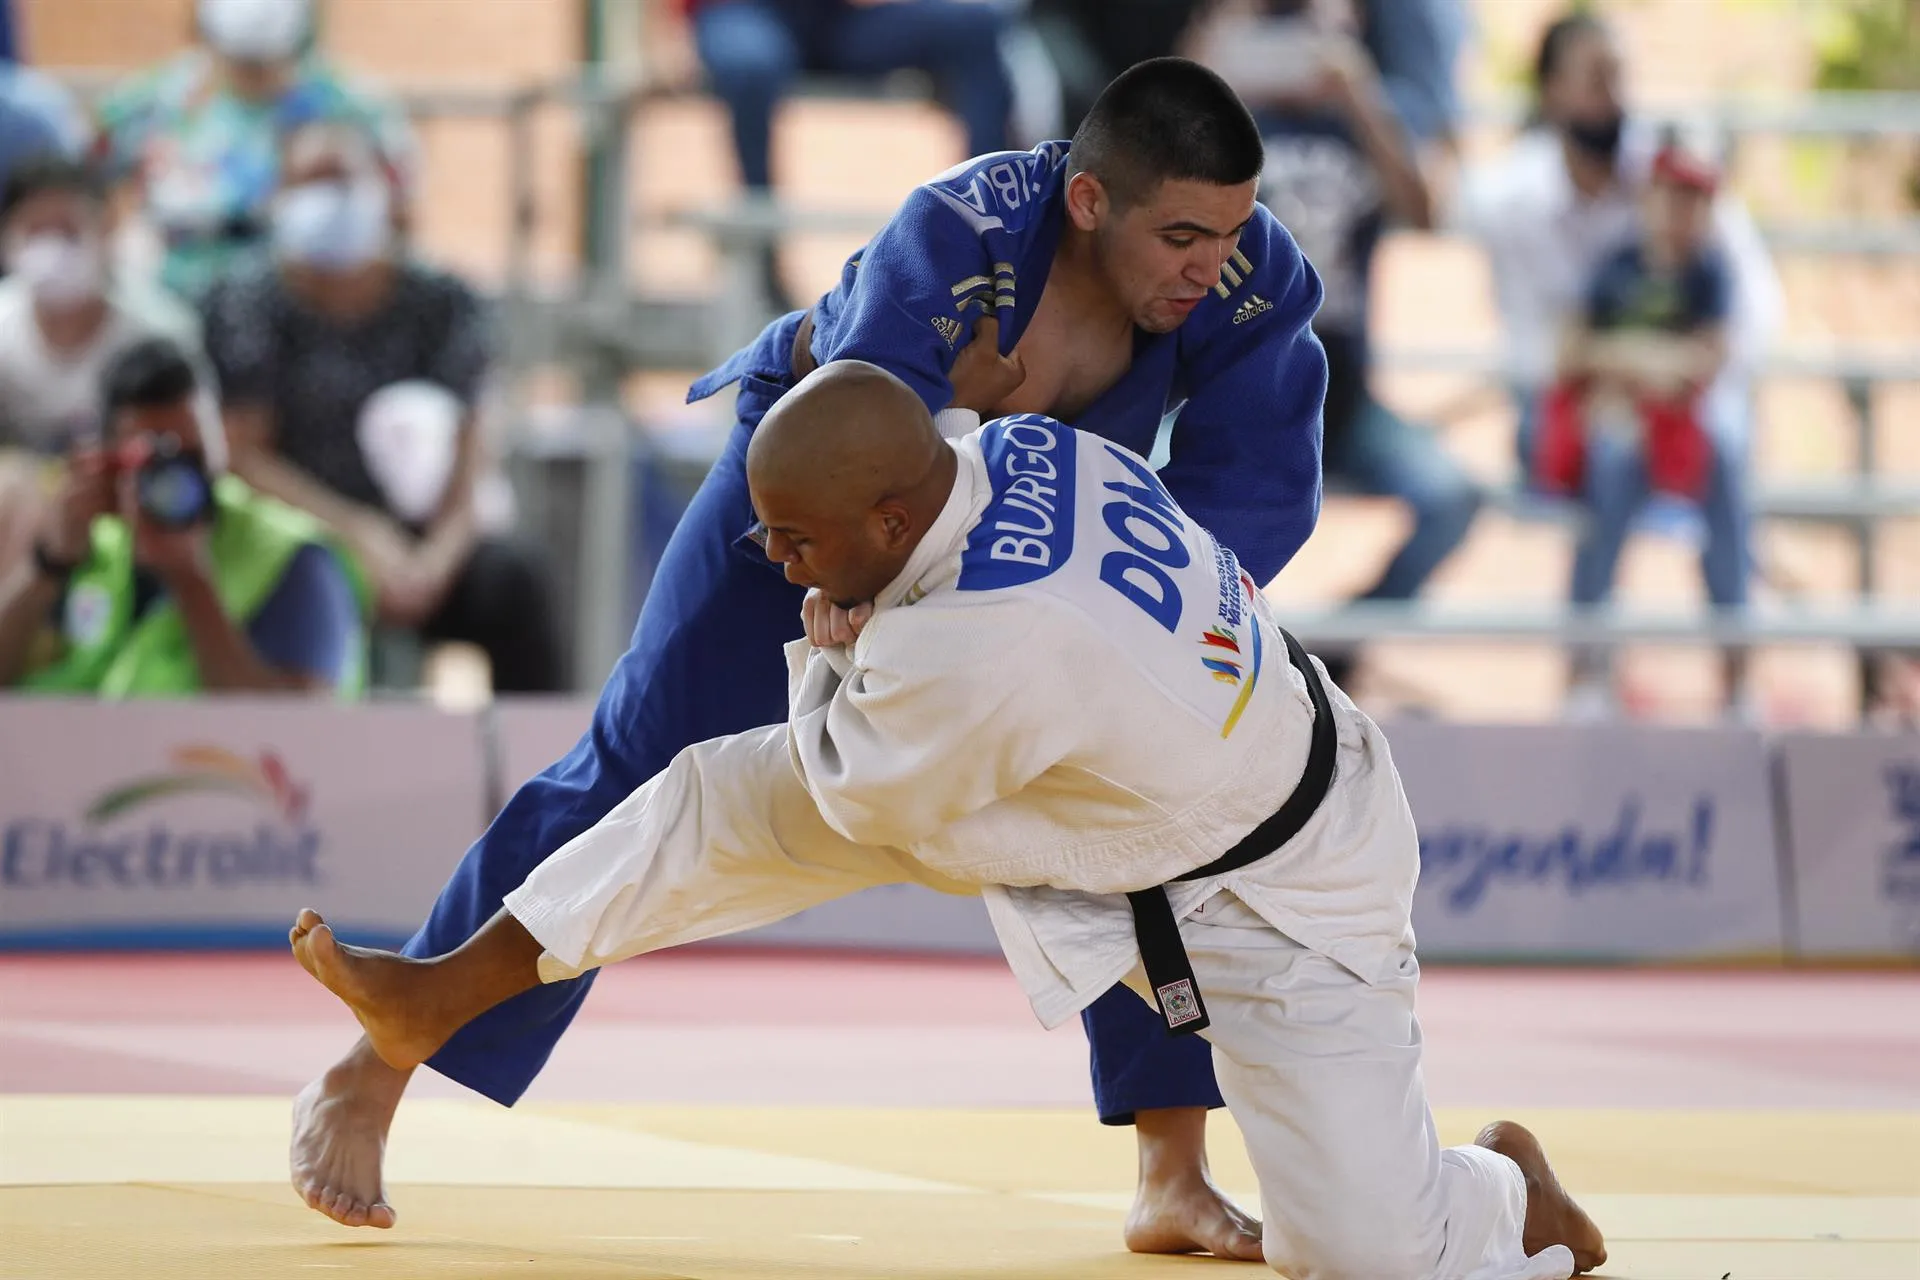 República Dominicana, Venezuela y Perú ganan oros en judo